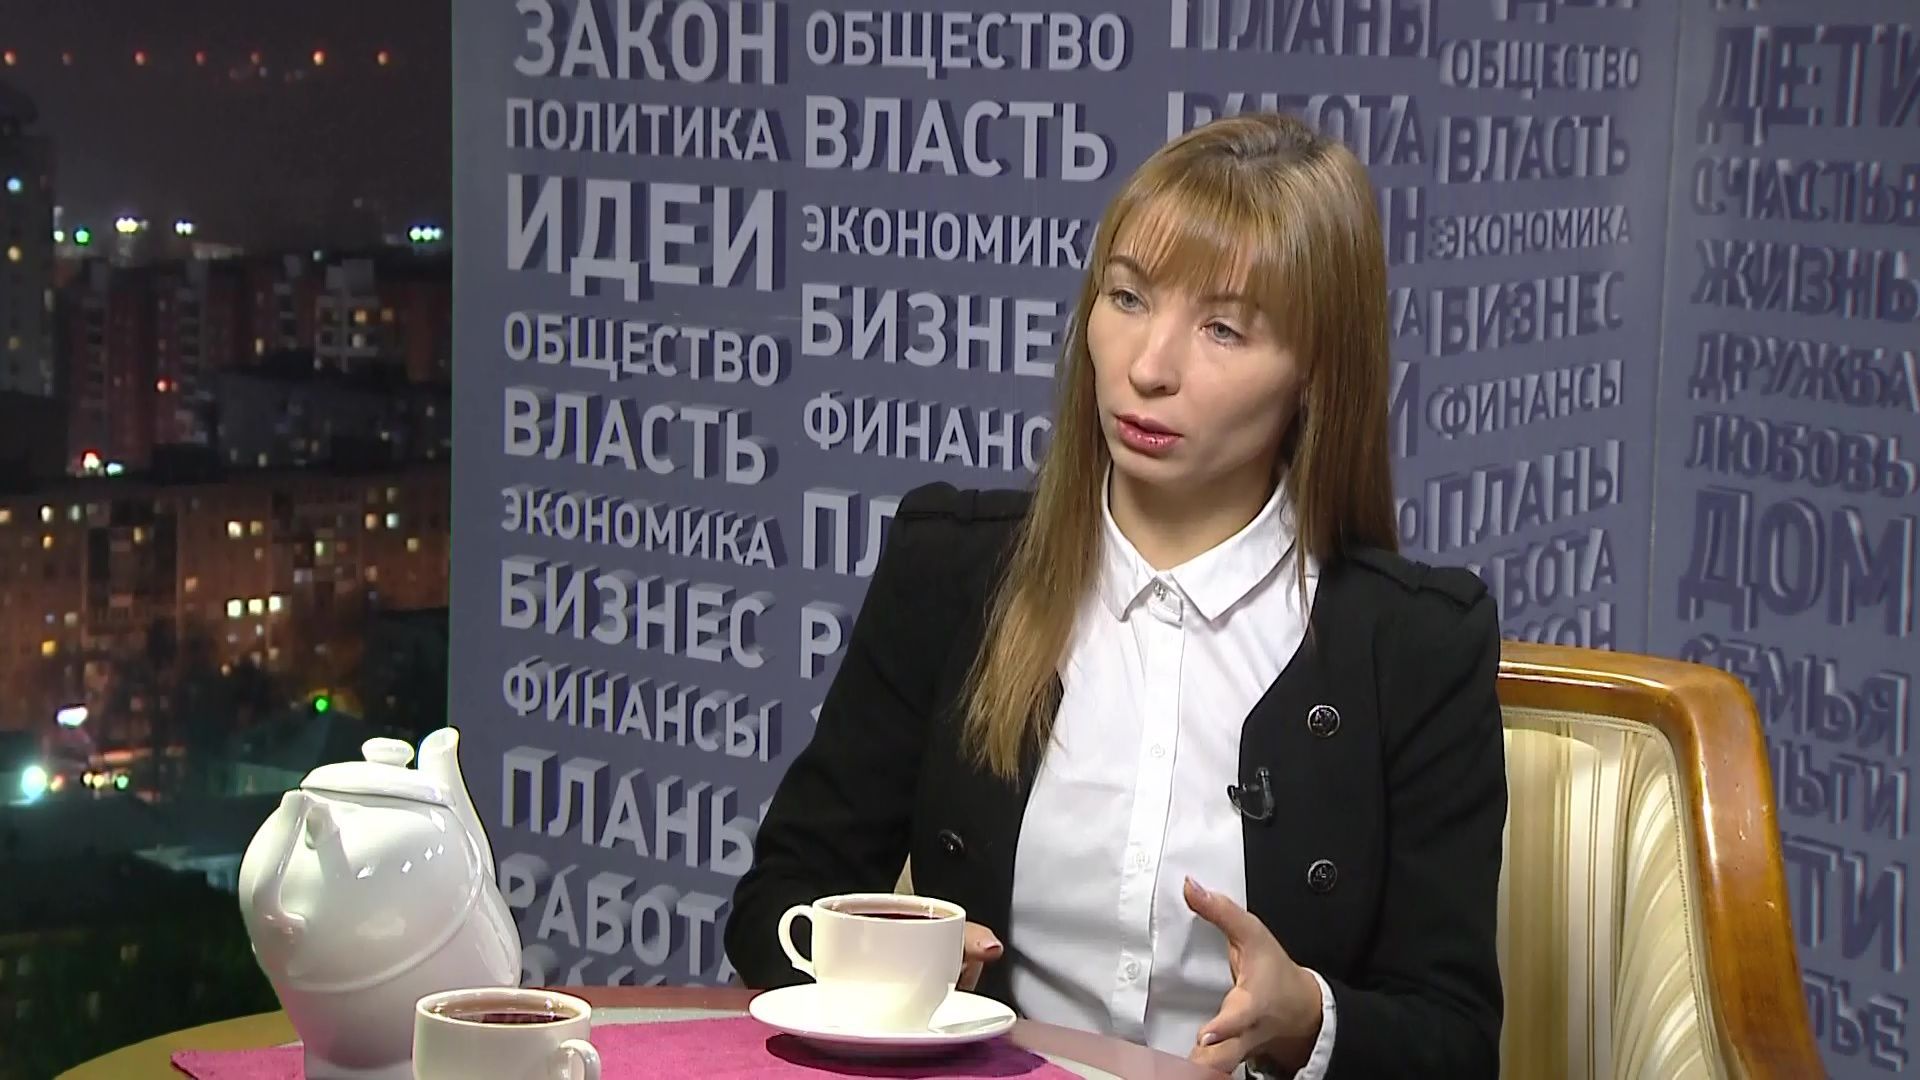 Анна Быкова, руководитель Агентства по развитию малого и среднего предпринимательства Пермского края